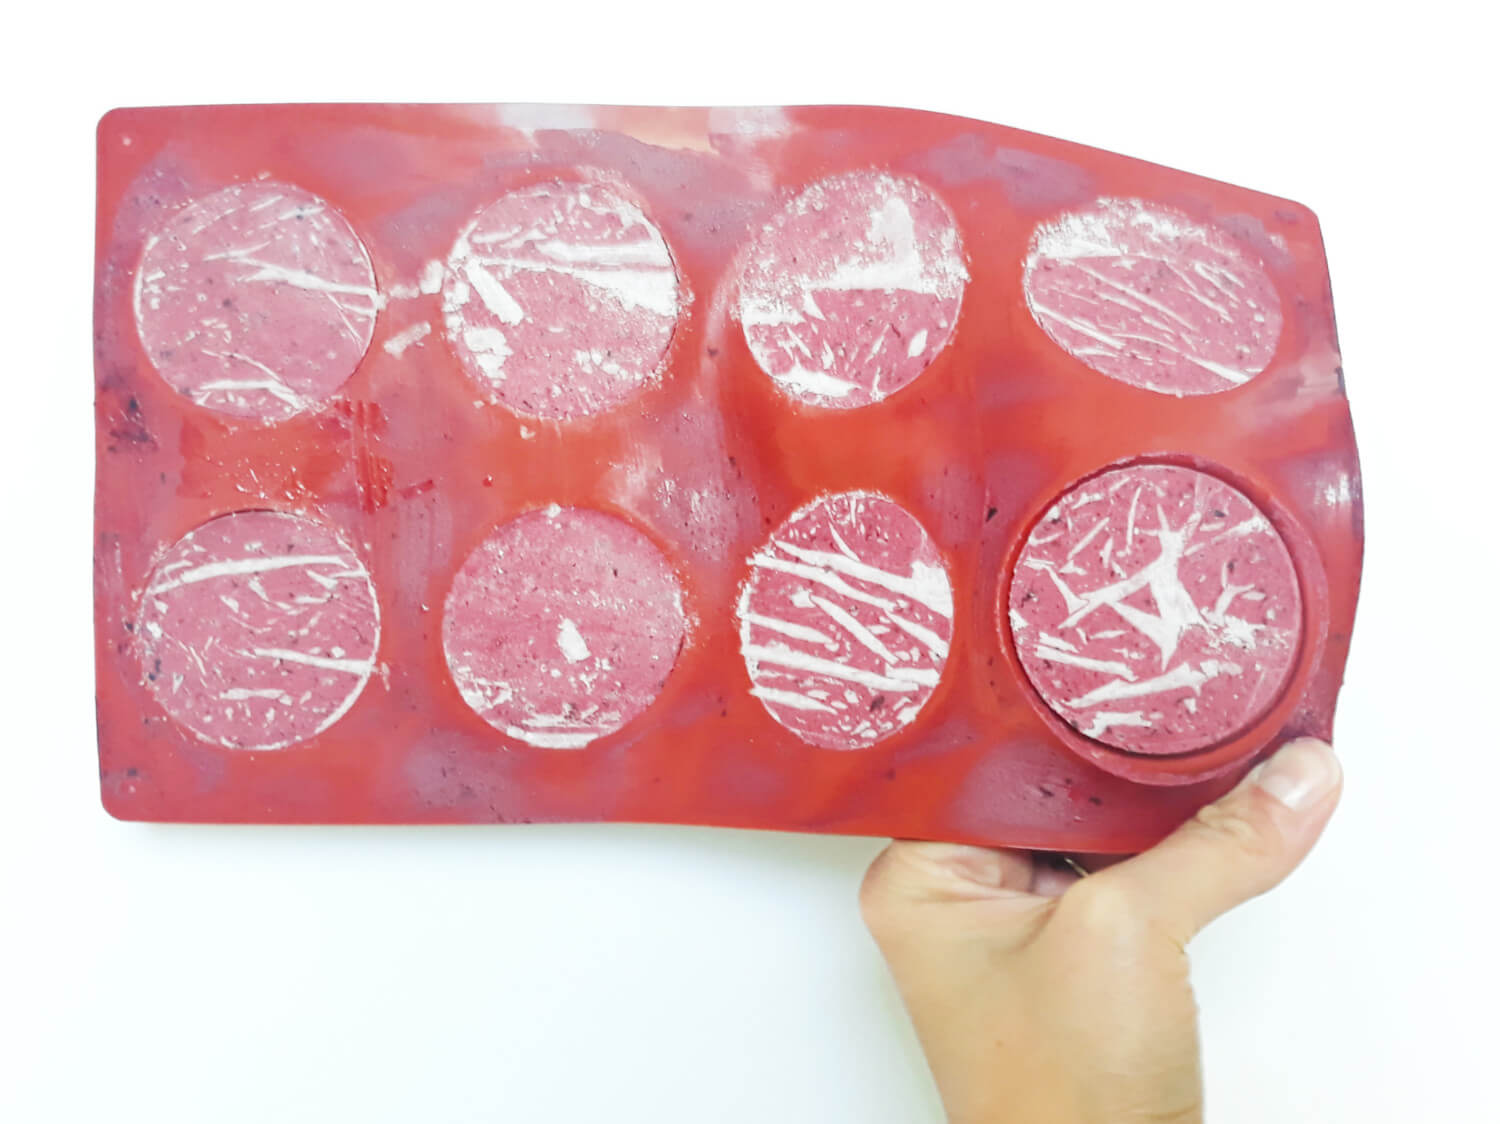 przygotowanie musu jagodowego do mini serniczków, wyciąganie zamrożonych serniczków z formy